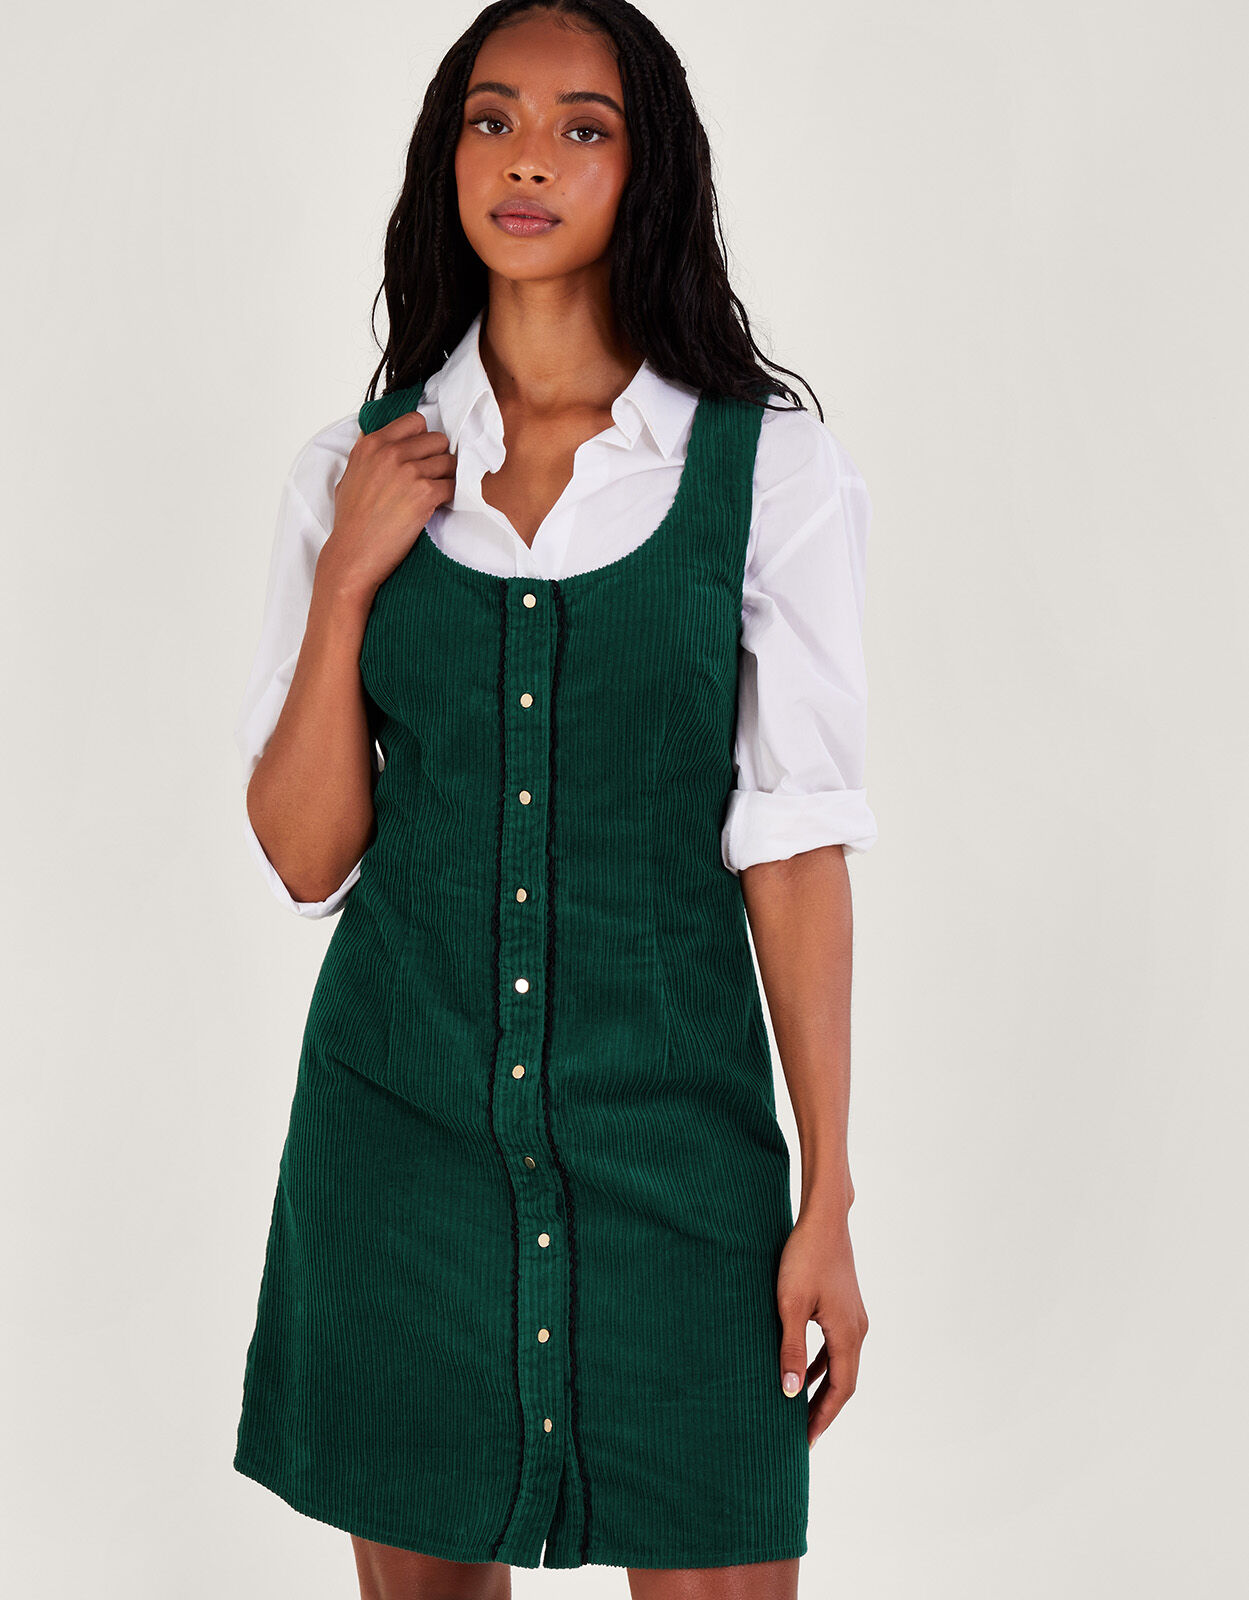 Buy Vemubapis Women's Jean Skirt Adjustable Demin Dress Girls Pinafore  Dresses Online at desertcartINDIA